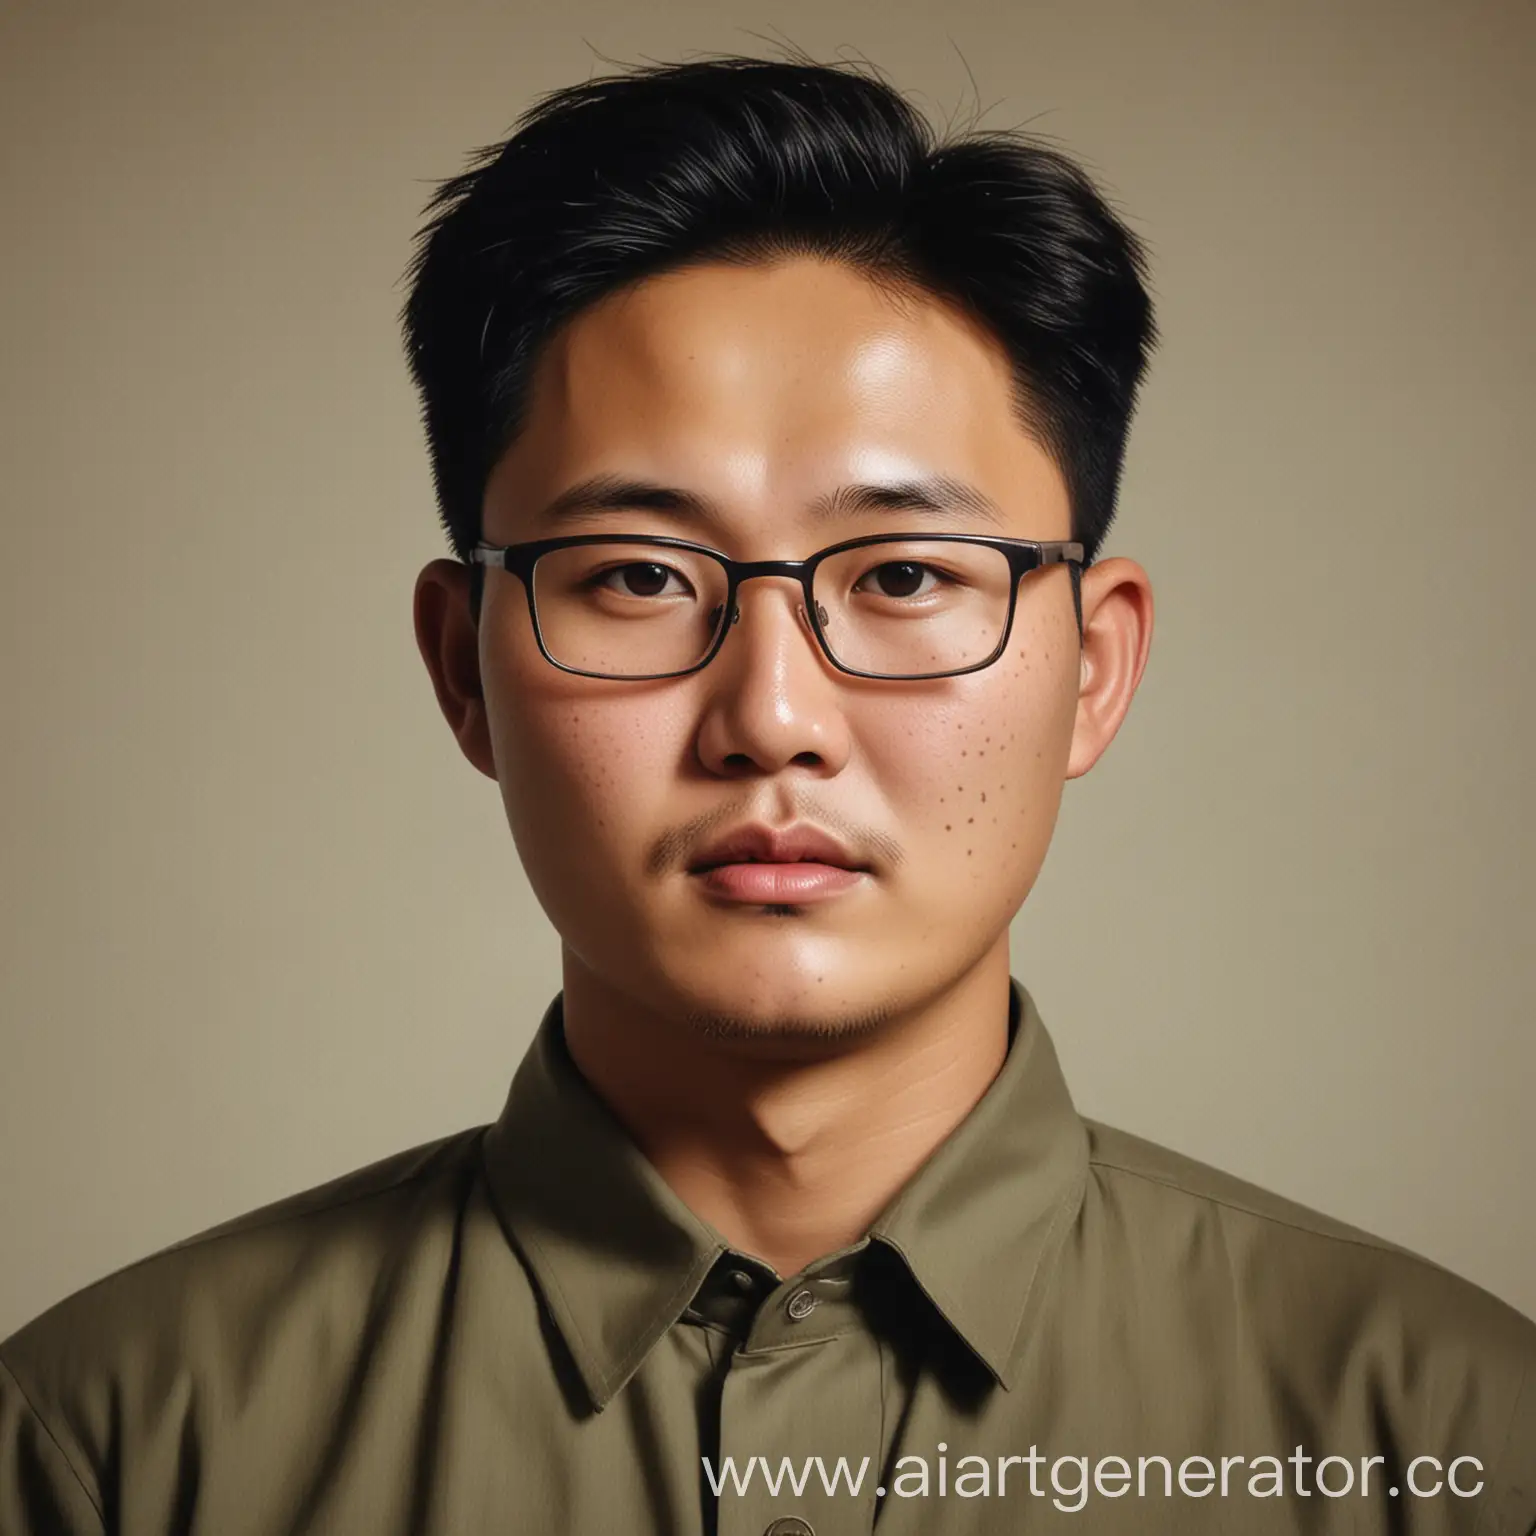 составь портрет северного корейца 30 лет